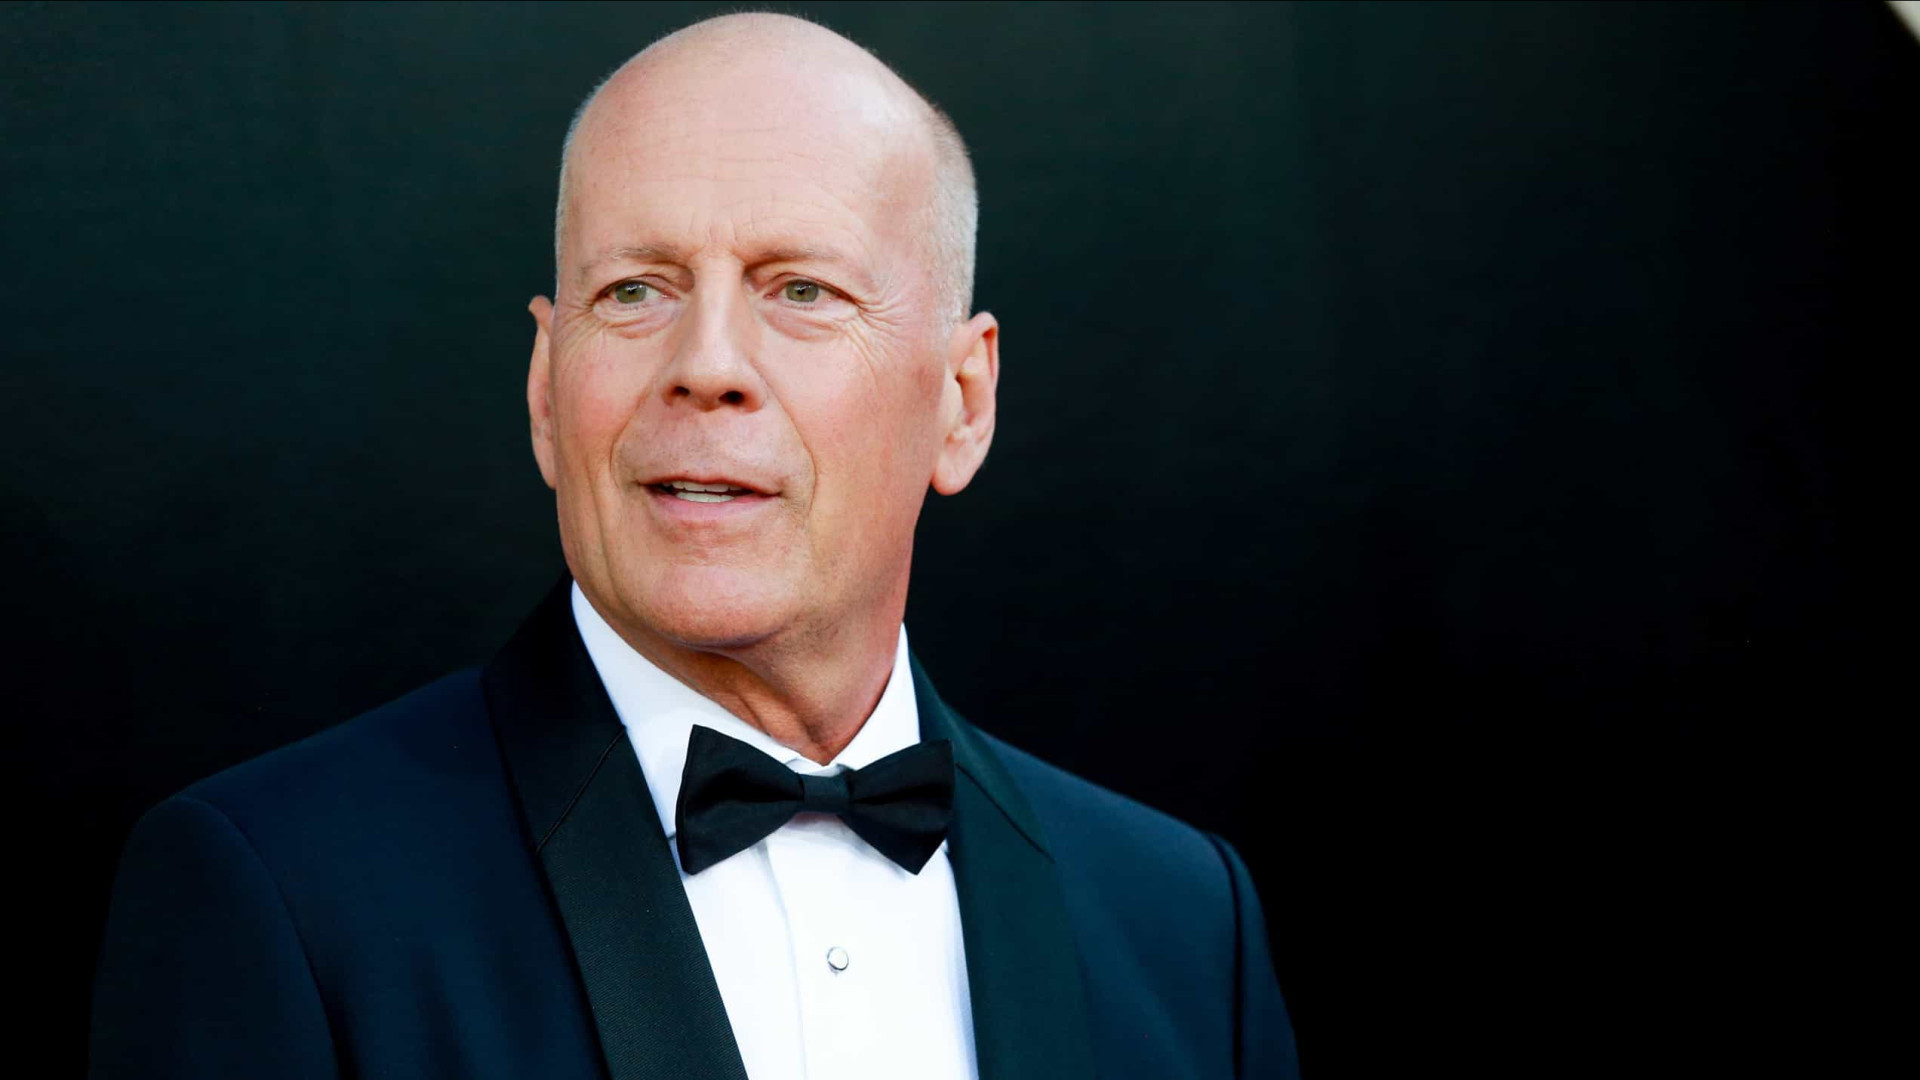 Bruce Willis é diagnosticado com demência frontotemporal